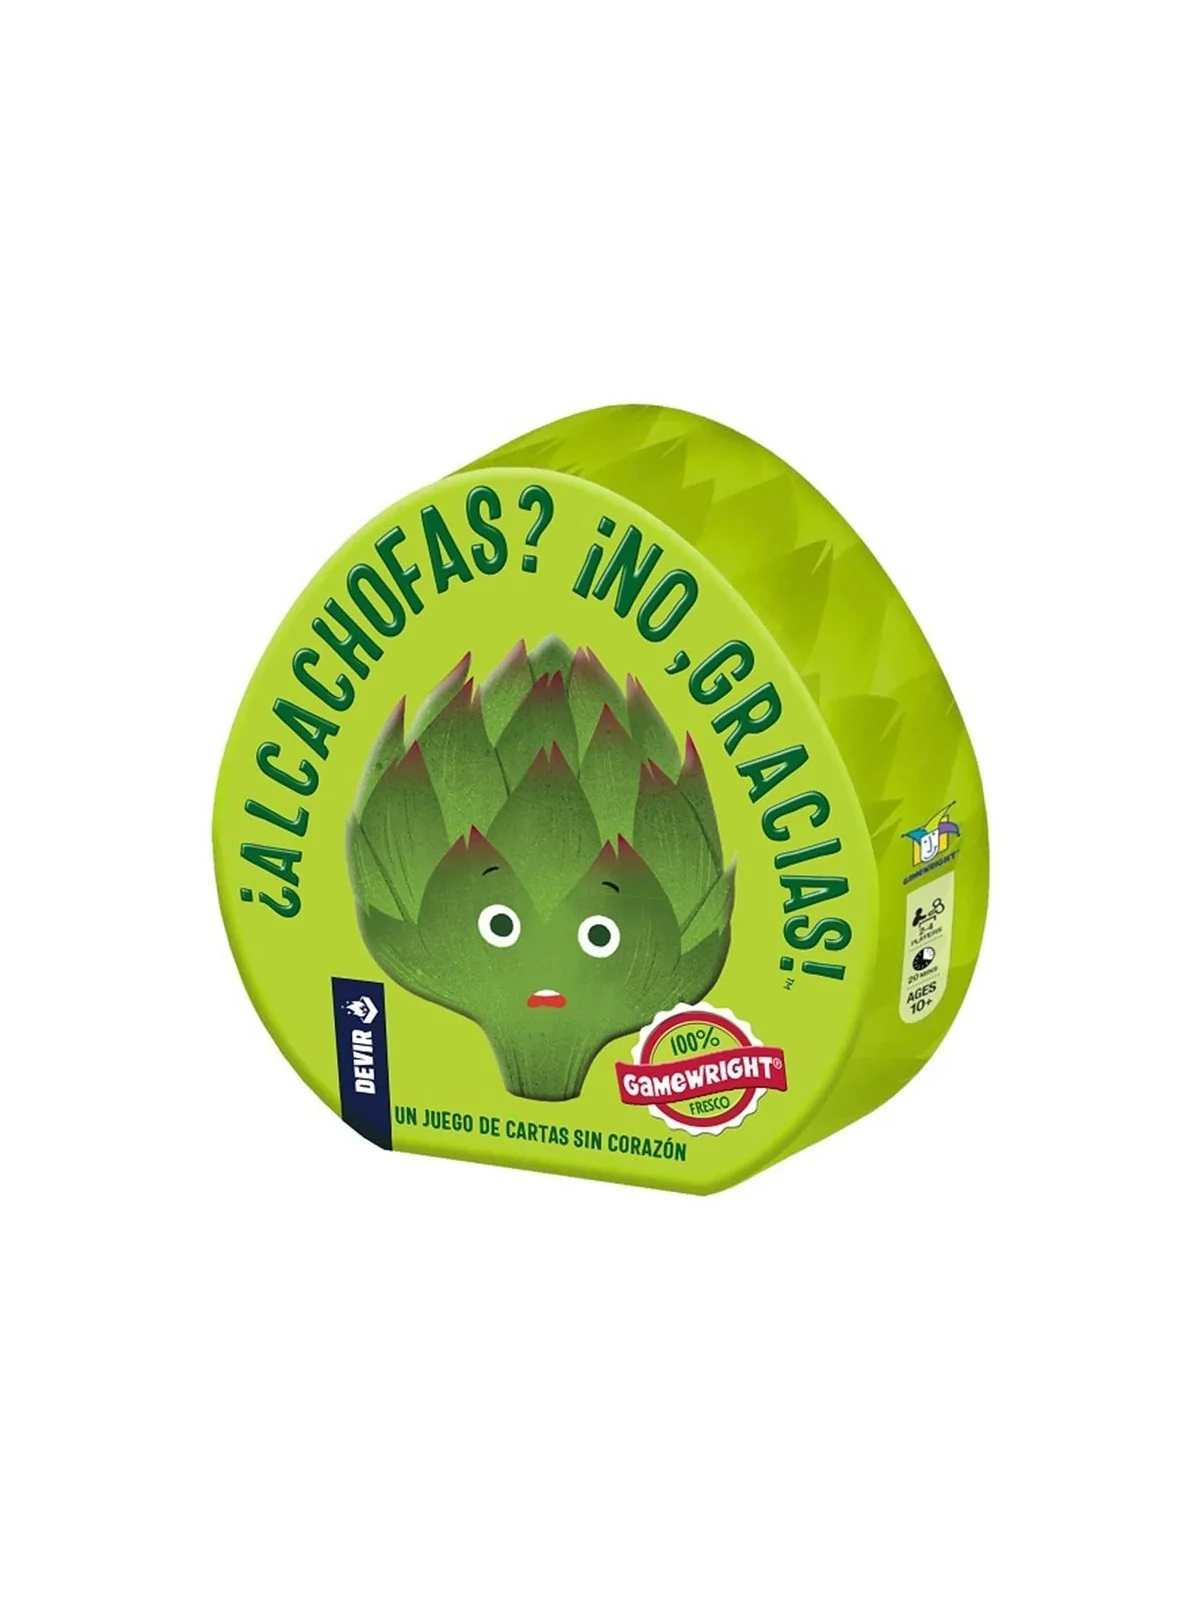 Comprar Alcachofas ¡No, Gracias! barato al mejor precio 12,60 € de Dev